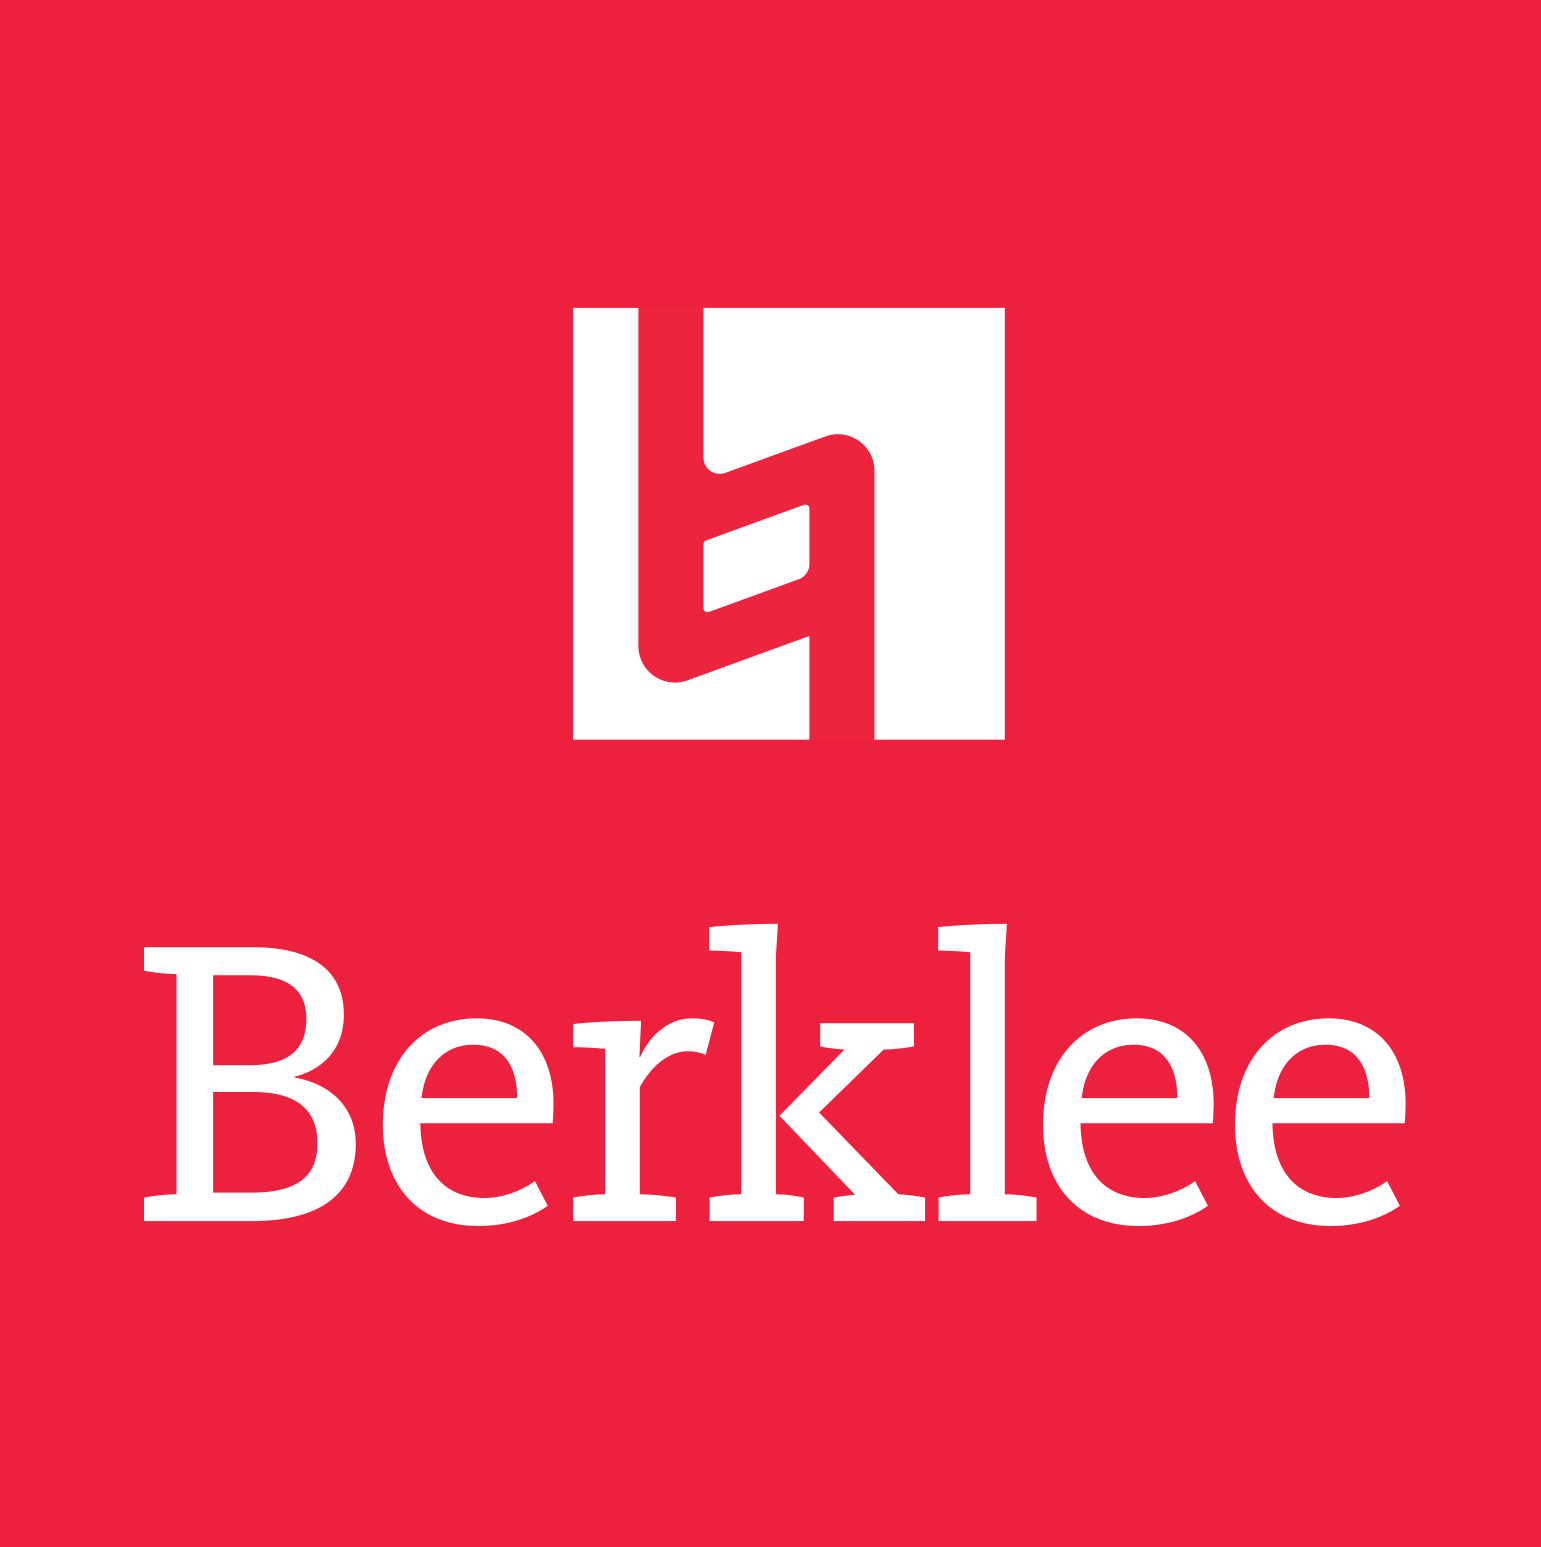 Berkley school of music online